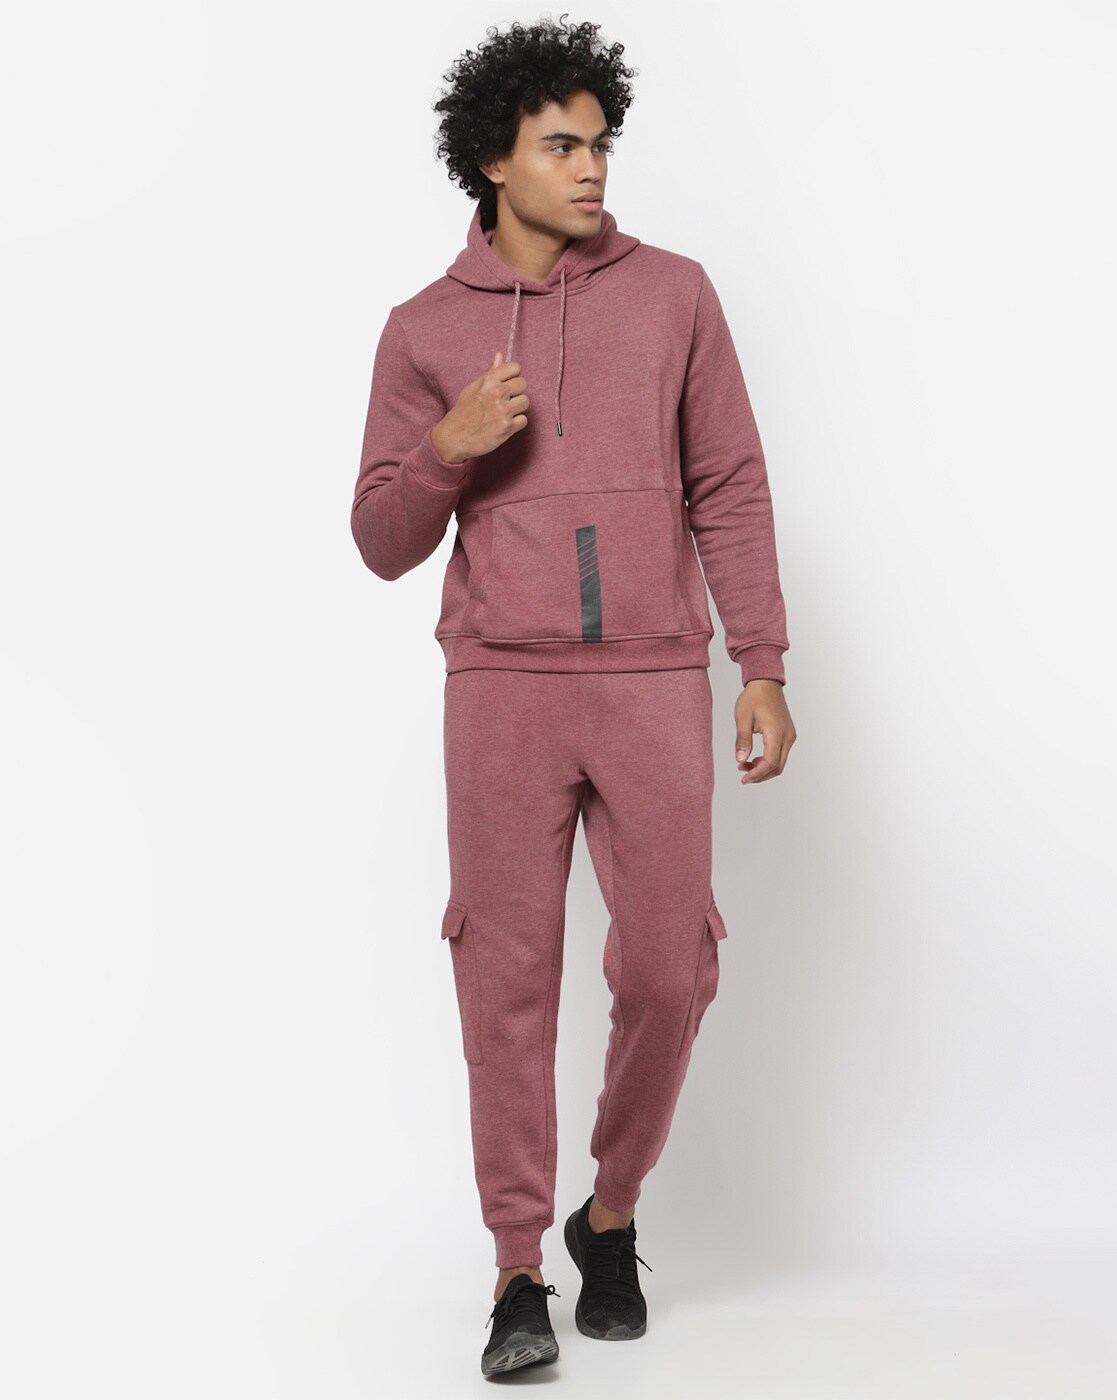 Buy Kiddopanti Full Sleeves Tie  Dye Print Hoodie Sweatshirt  Track Pants  Fleece Set Light Baby Pink  Navy Blue for Both 1214Years Online in  India Shop at FirstCrycom  12145901